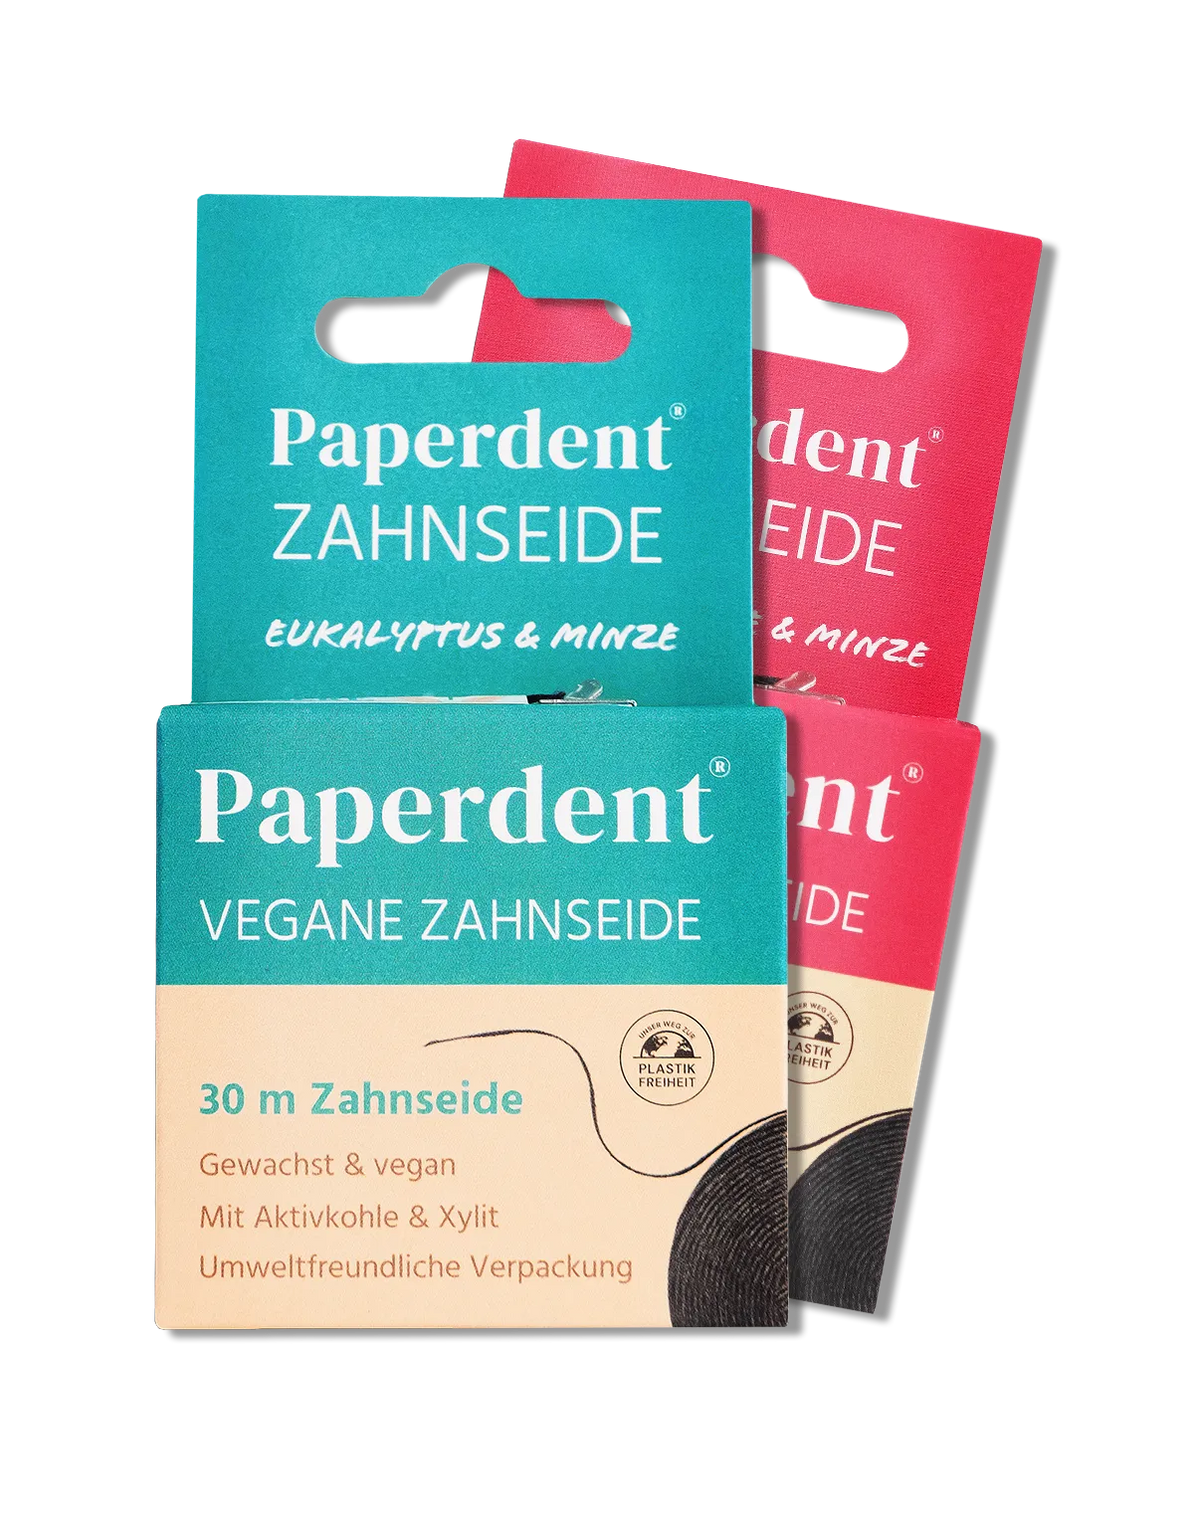 Vegane Zahnseide in Verpackung aus Papier, nachhaltig und vegan